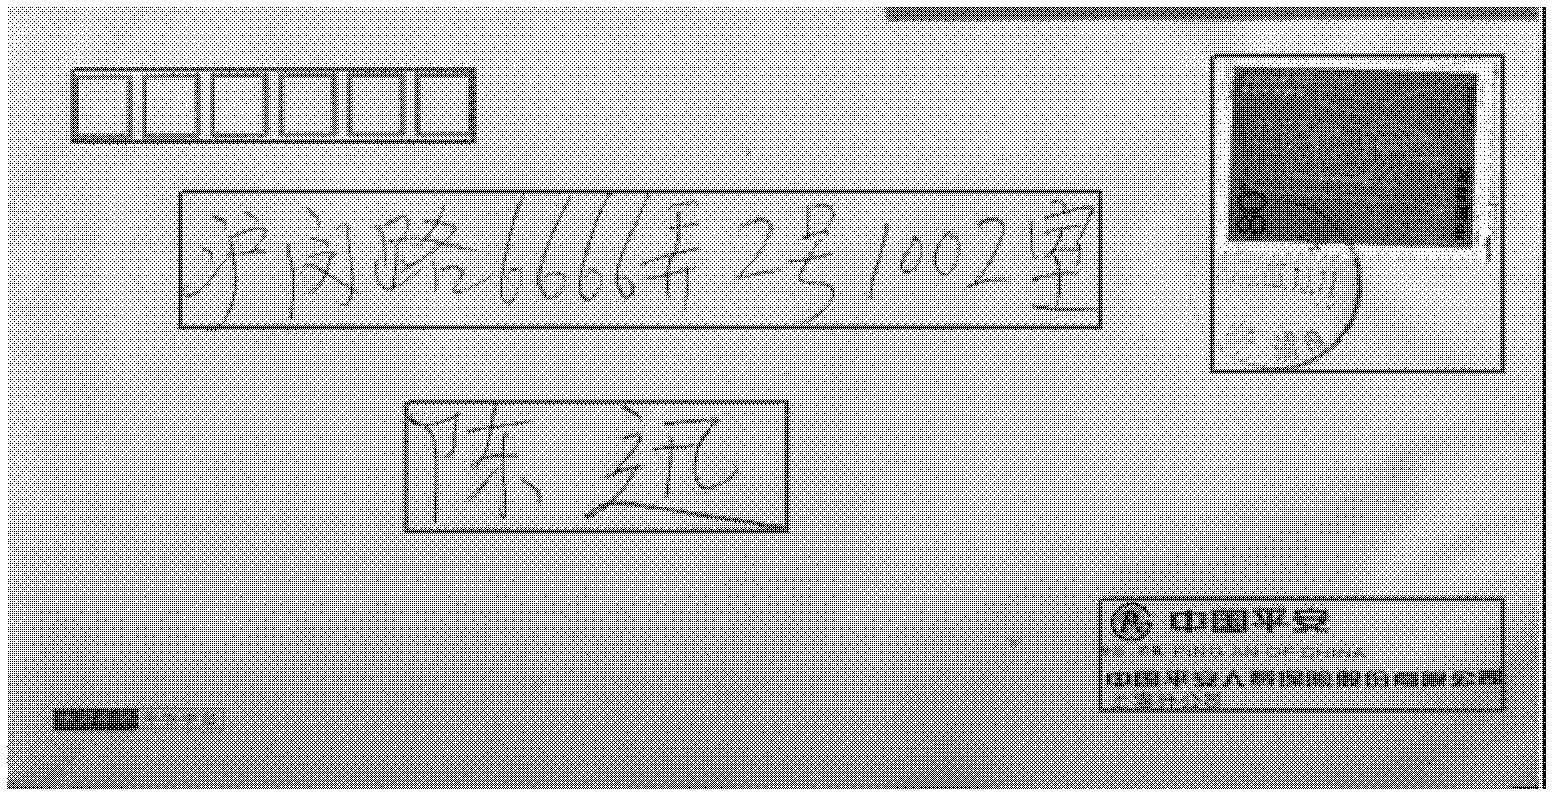 An Envelope Image Matching Method